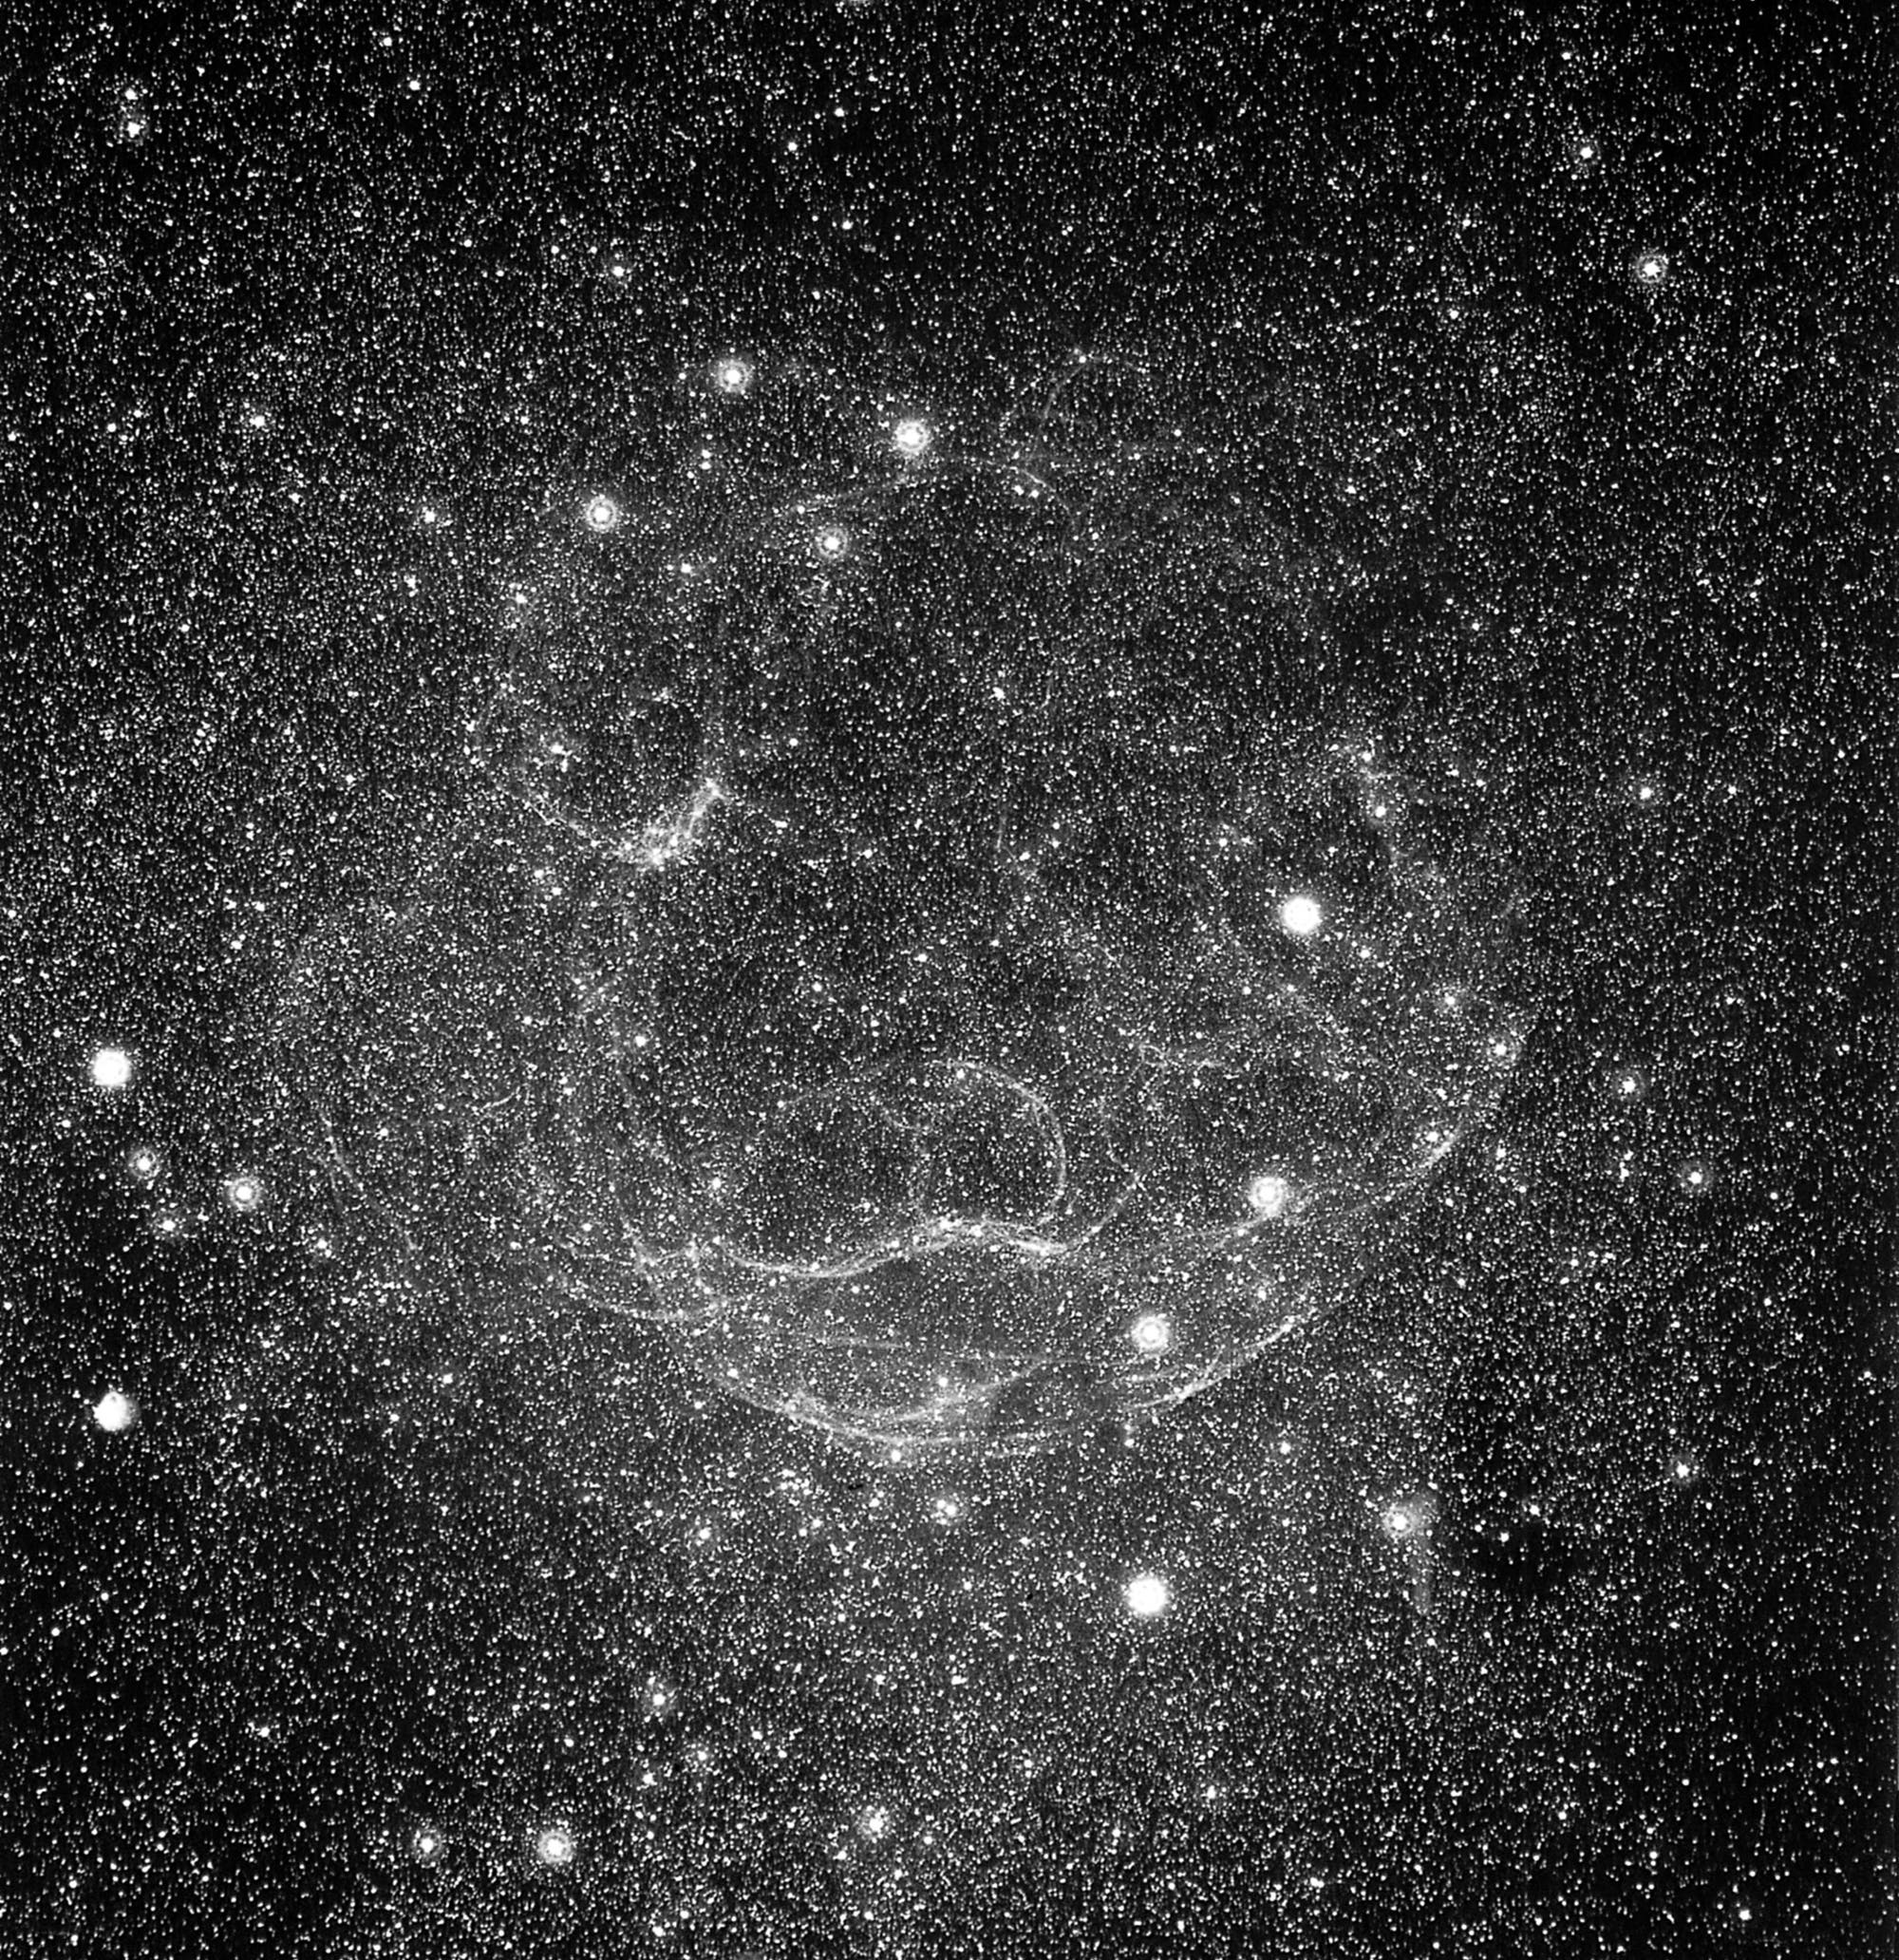 Abbildung 3: Der Supernova-Überrest Shajn 147 im Sternbild Stier